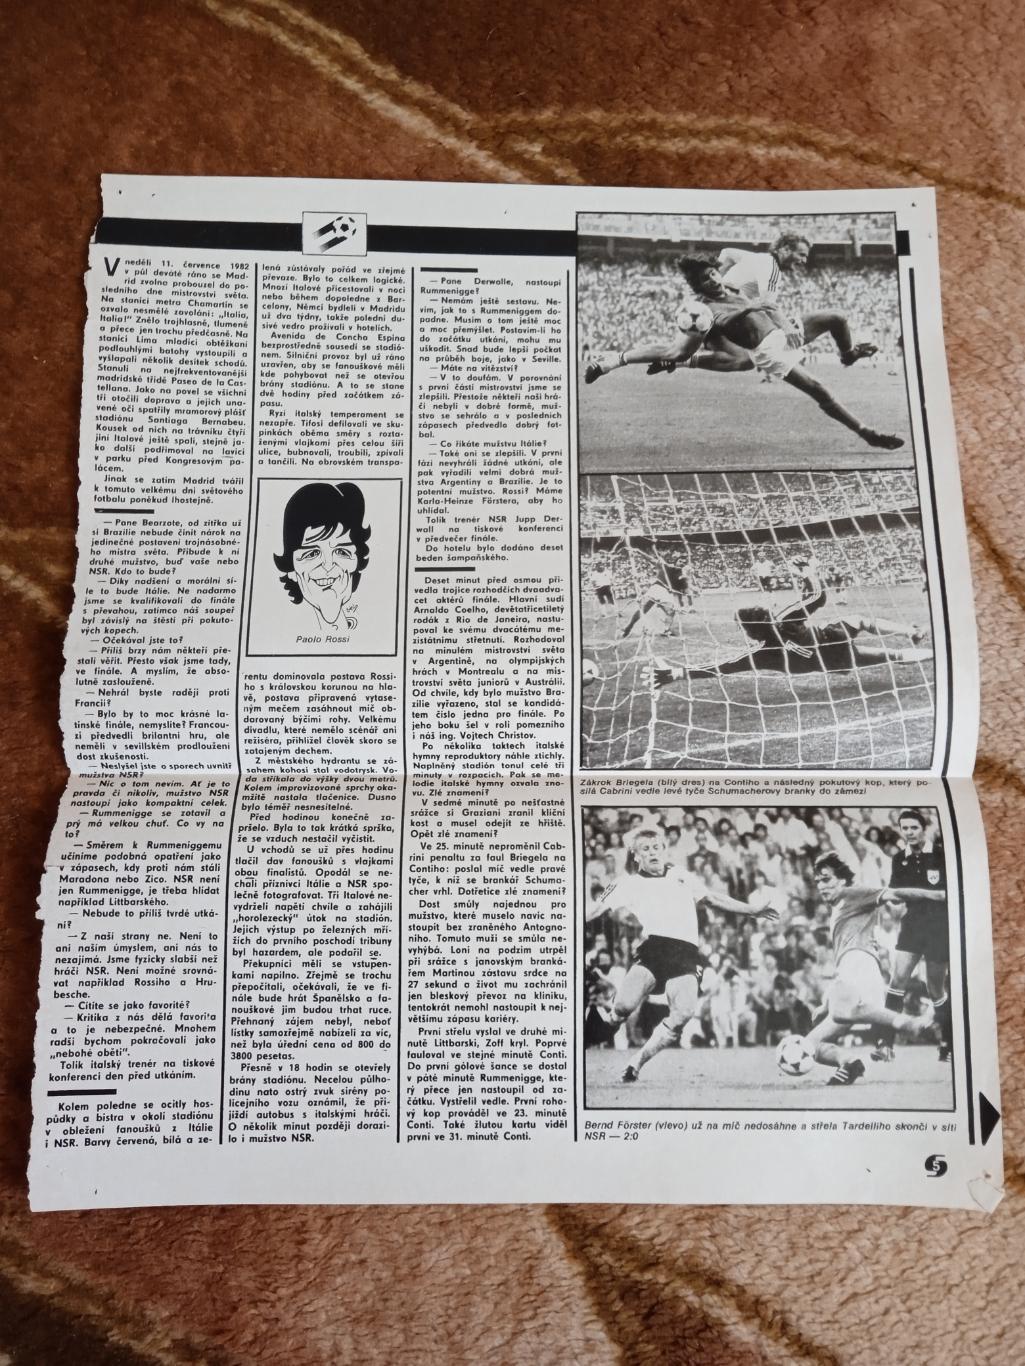 Фото.Футбол.Чемпионат мира 1982.Испания.ФРГ - Италия.Журнал Стадион. 1